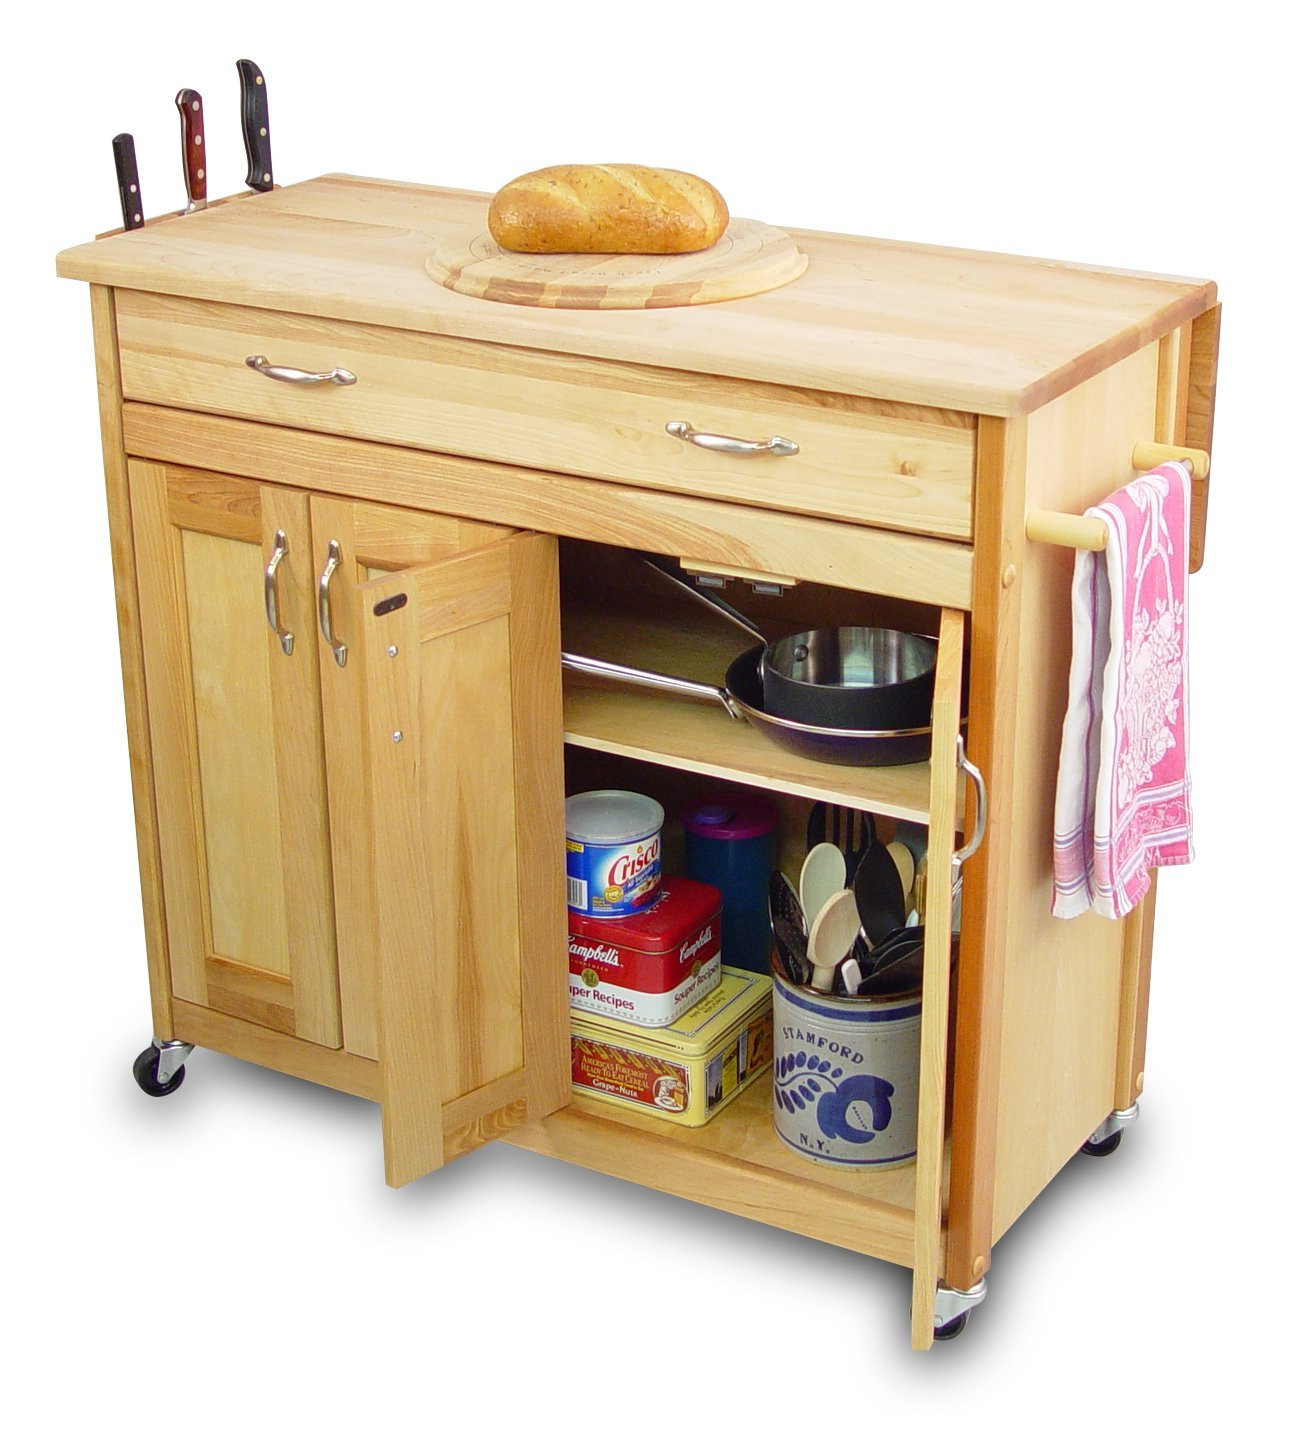 Wooden Kitchen Storage Cabinets
 Kitchen Storage Cabinets Design Inspiration Home Design